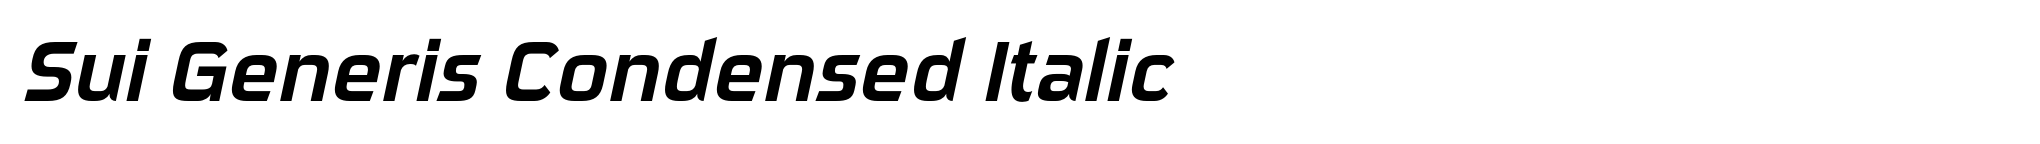 Sui Generis Condensed Italic image